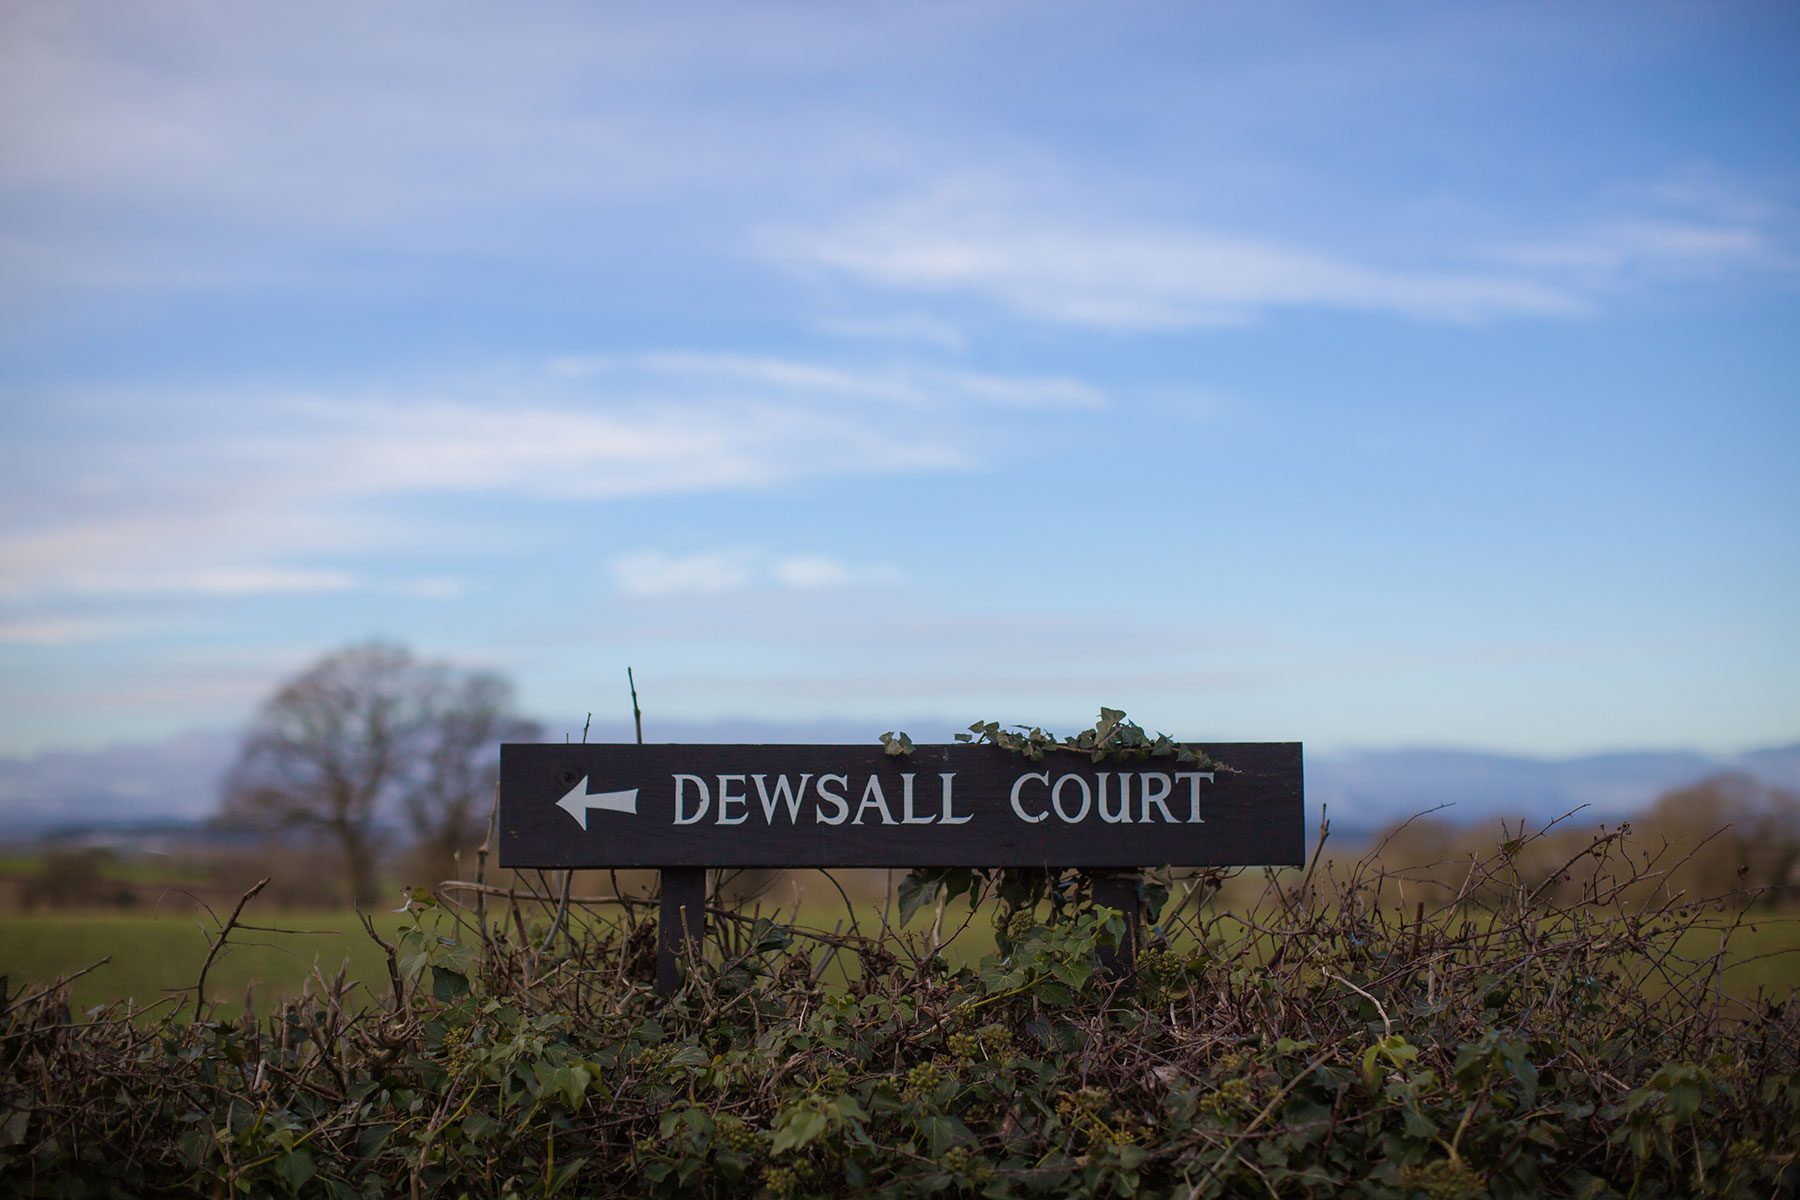 dewsall court 